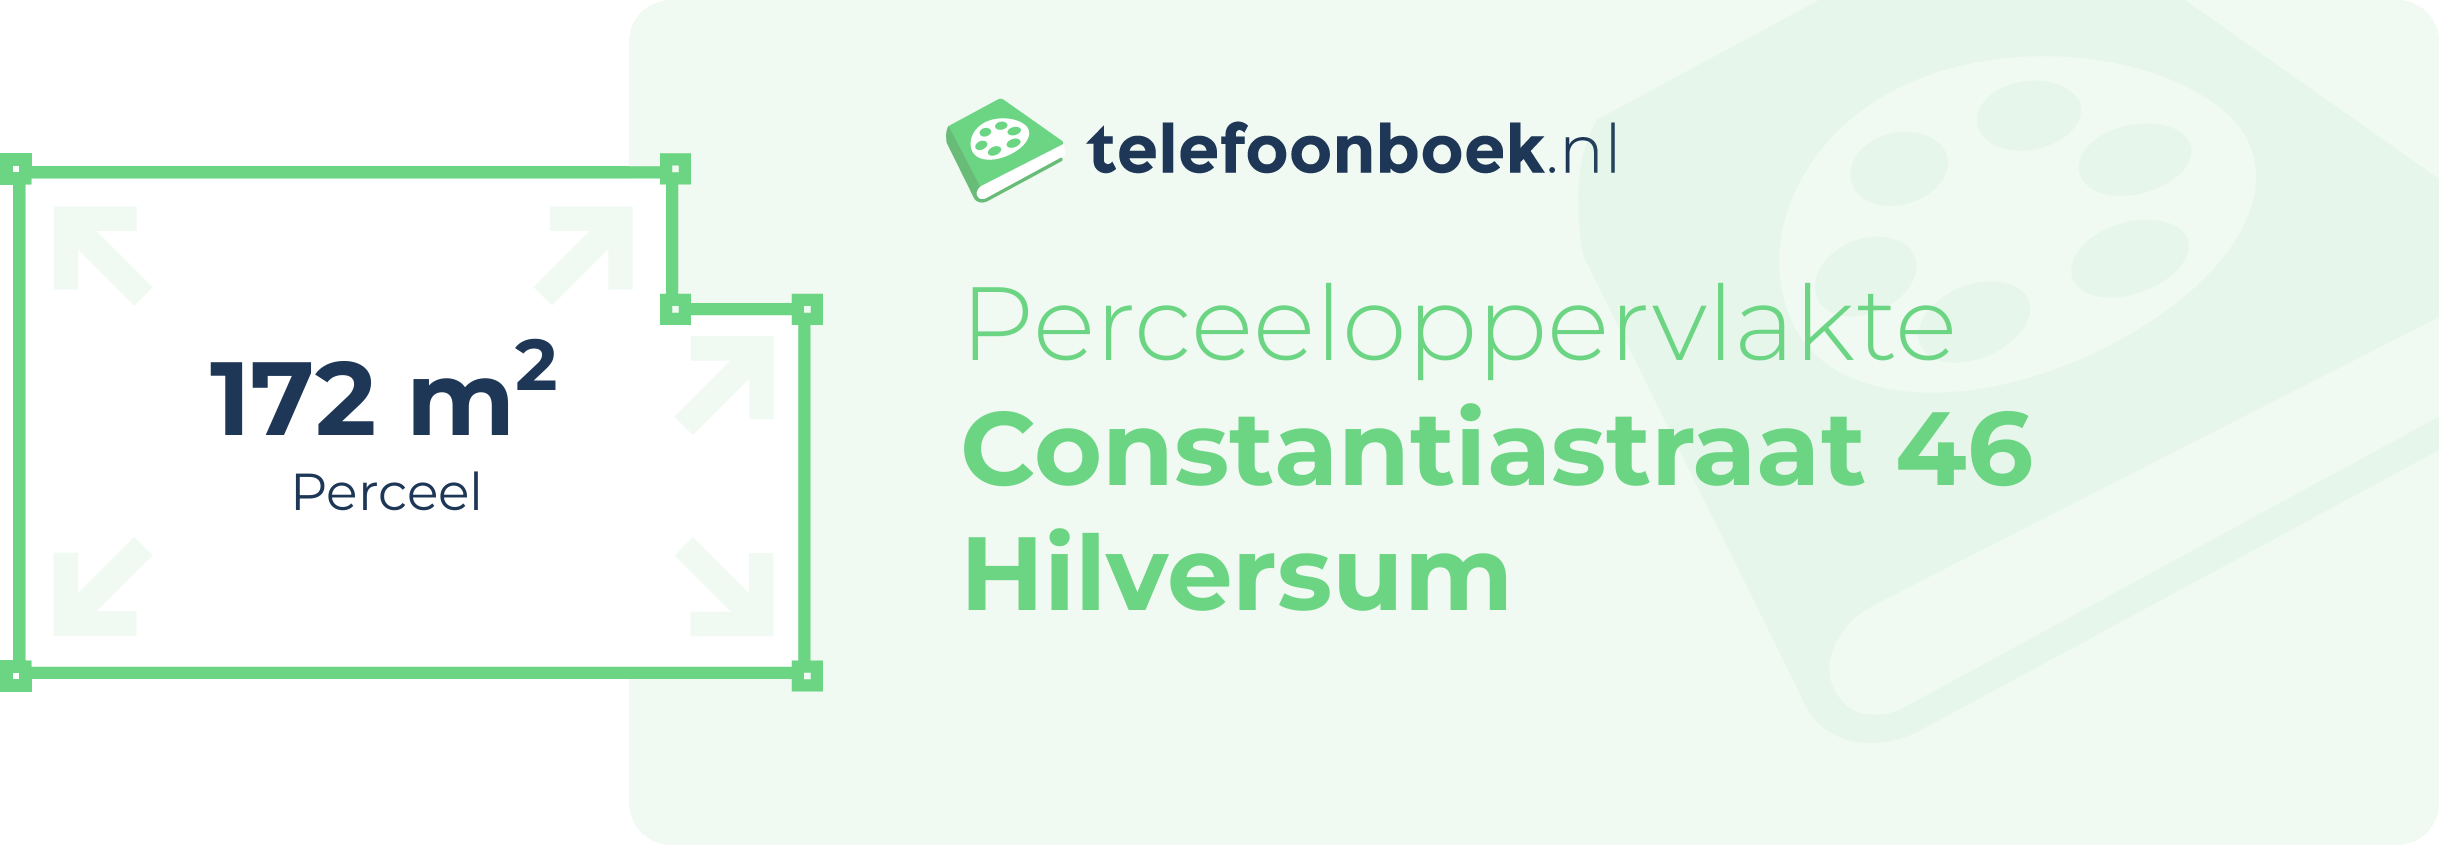 Perceeloppervlakte Constantiastraat 46 Hilversum